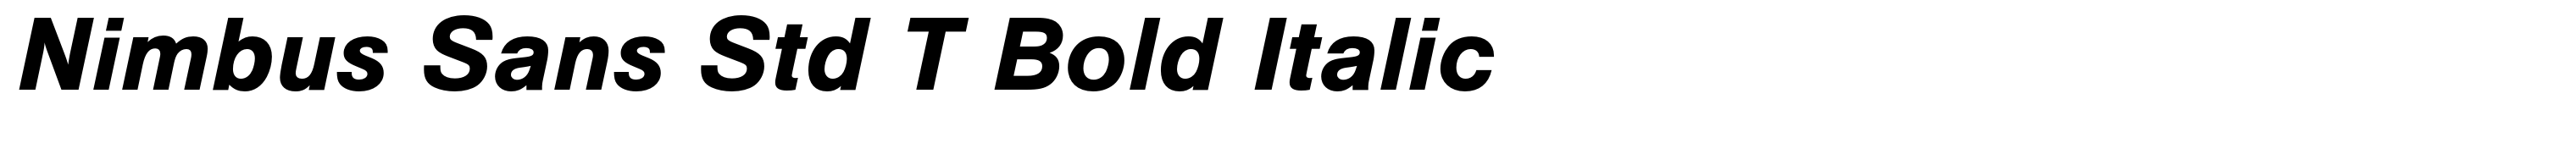 Nimbus Sans Std T Bold Italic